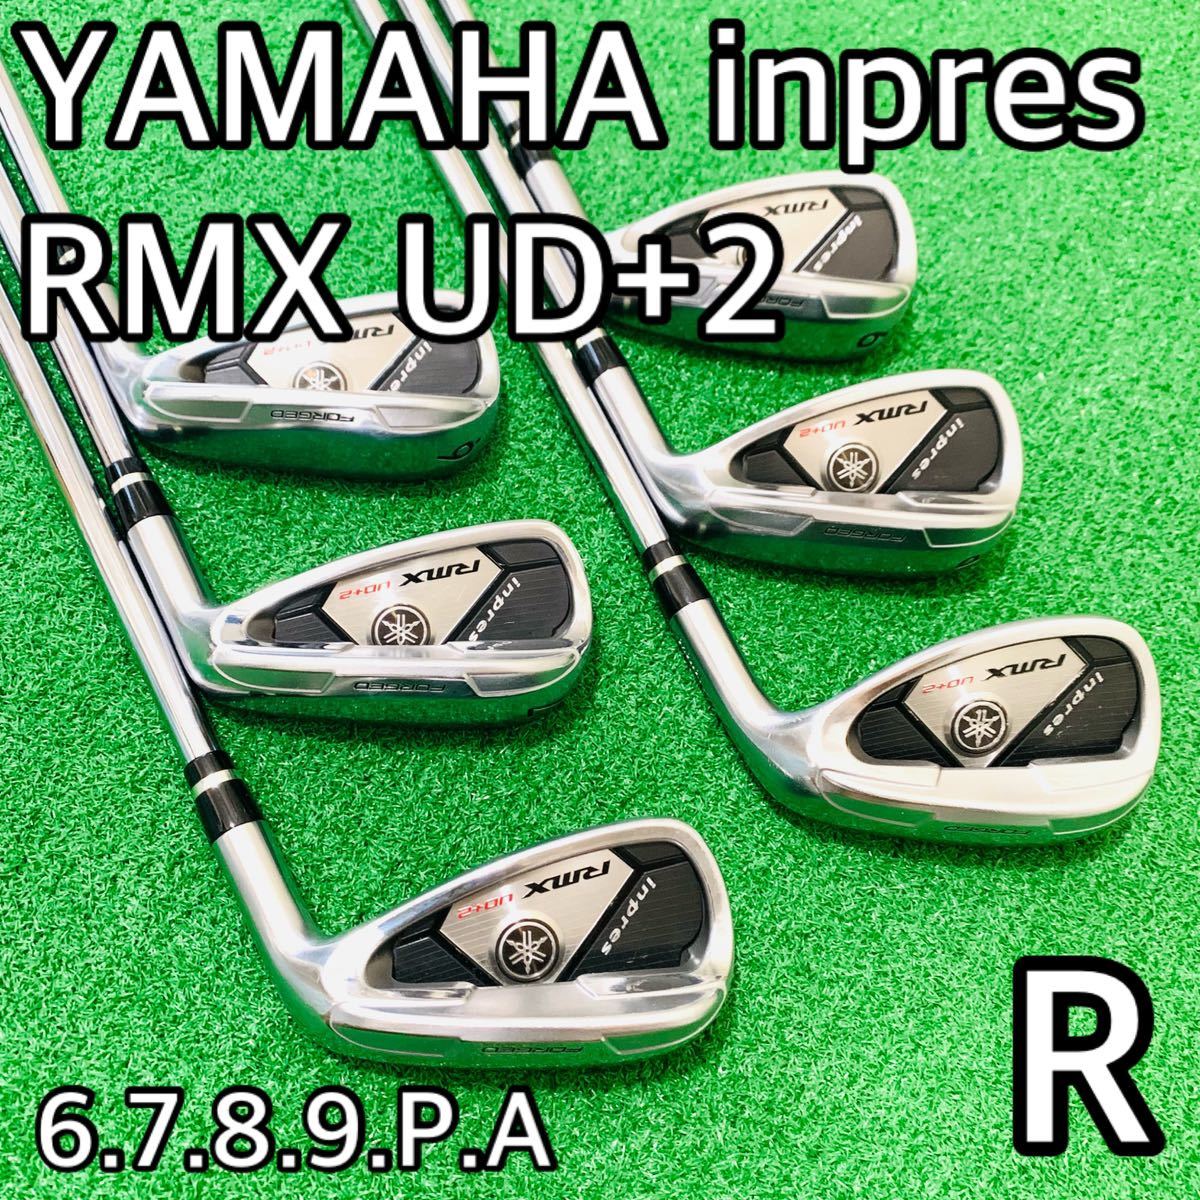 YAMAHAヤマハinpres RMX UD+2 アイアンゴルフクラブ六本セット Yahoo 